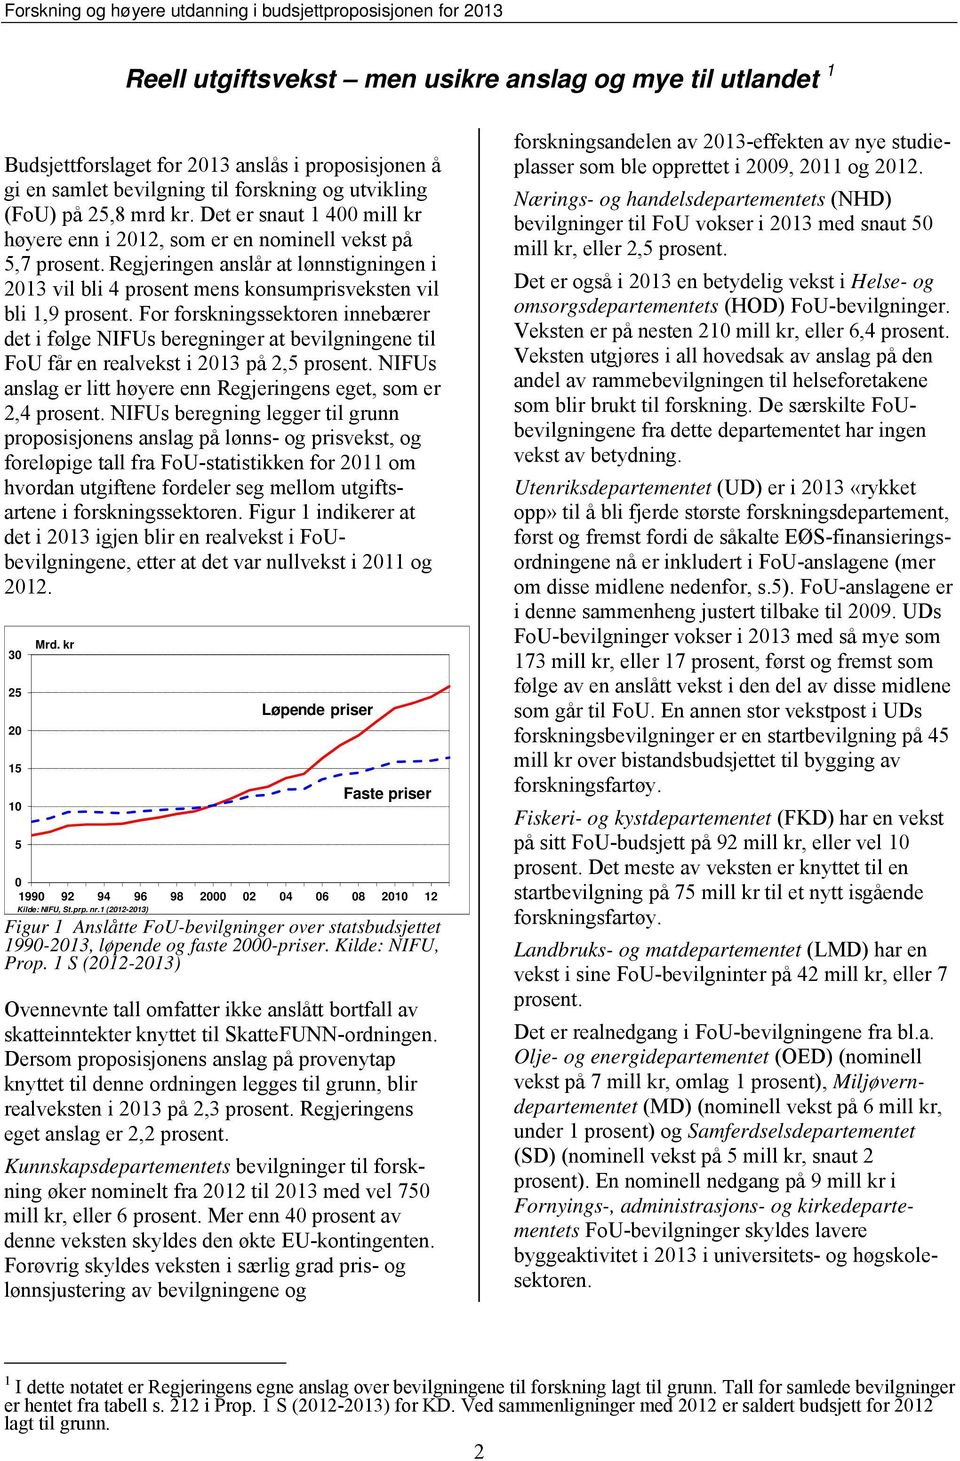 For forskningssektoren innebærer det i følge NIFUs beregninger at bevilgningene til FoU får en realvekst i 2013 på 2,5 prosent. NIFUs anslag er litt høyere enn Regjeringens eget, som er 2,4 prosent.